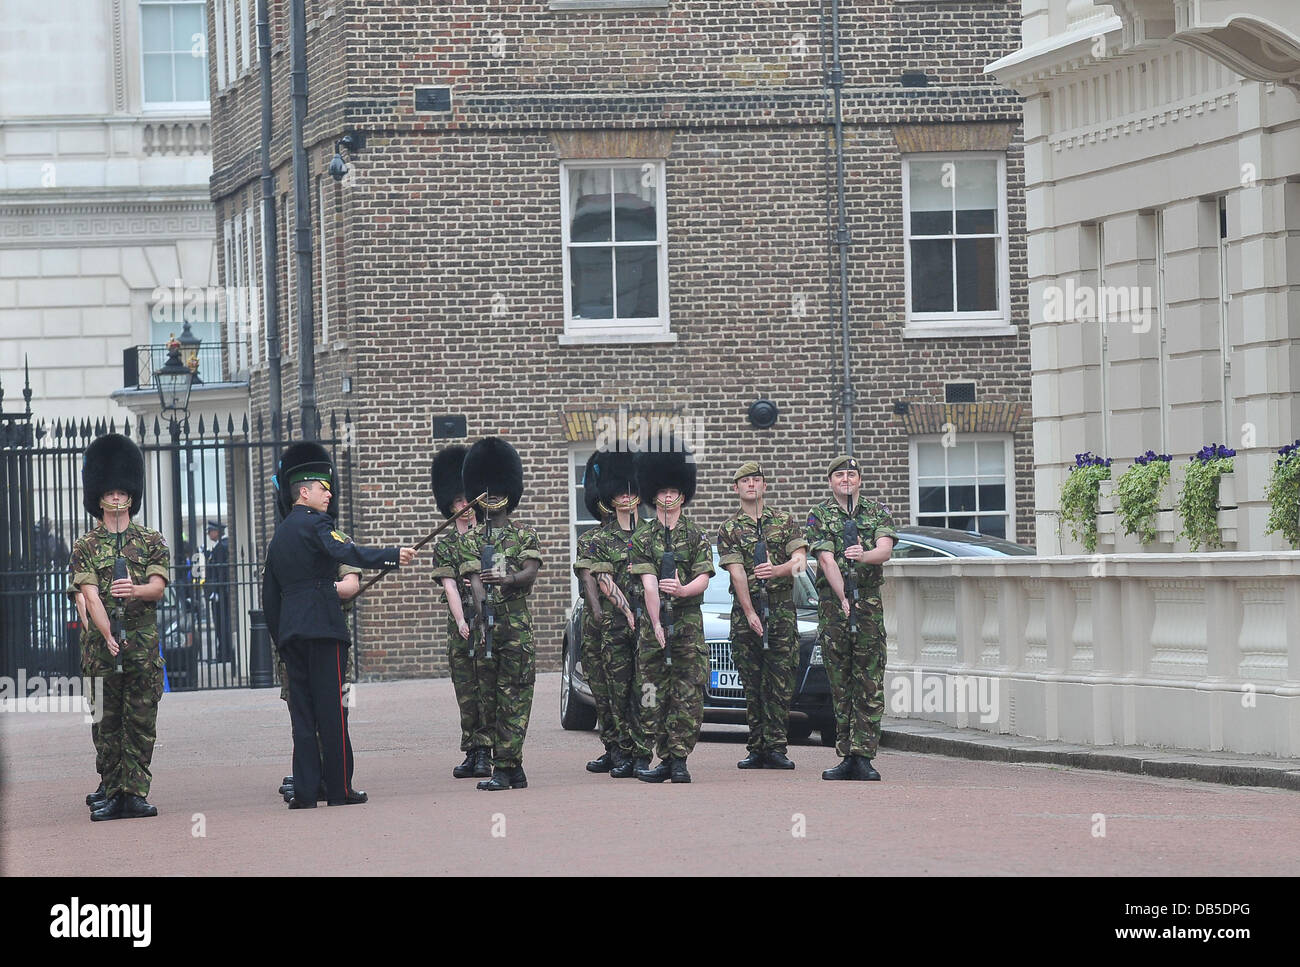 La atmósfera de la boda del príncipe Guillermo y Catherine Middleton - Clarence House, Londres, Inglaterra - 29.04.11 Foto de stock